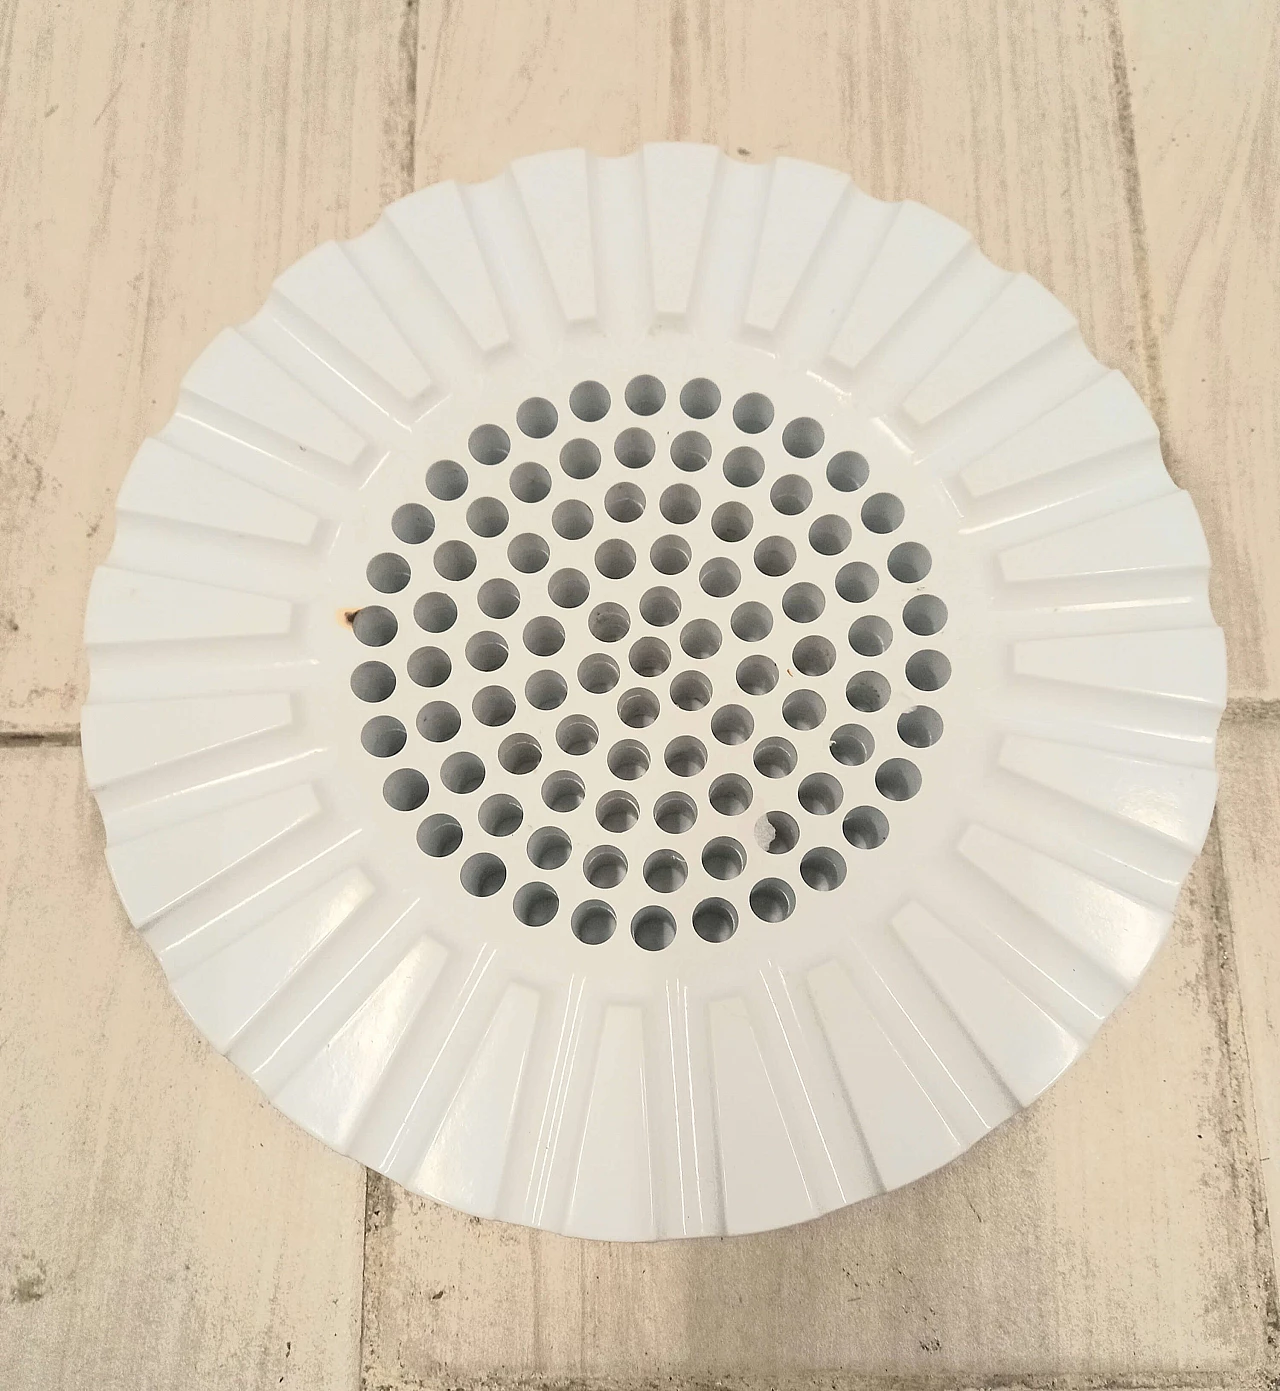 White 4638 ashtray by Anna Castelli Ferrieri for Kartell, 1970s 2